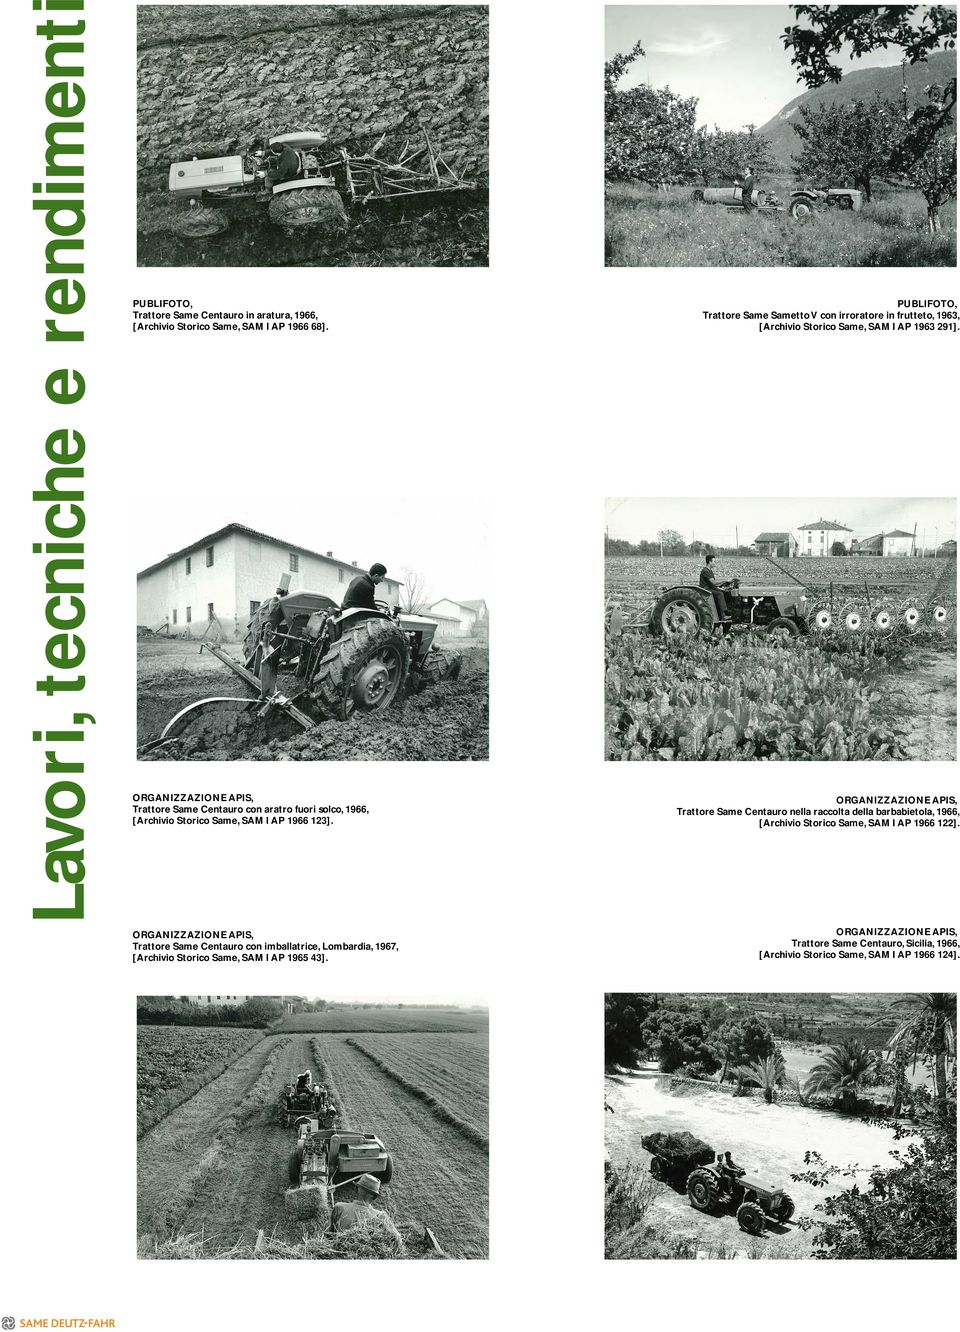 Trattore Same Centauro con imballatrice, Lombardia, 1967, [Archivio Storico Same, SAM I AP 1965 43].